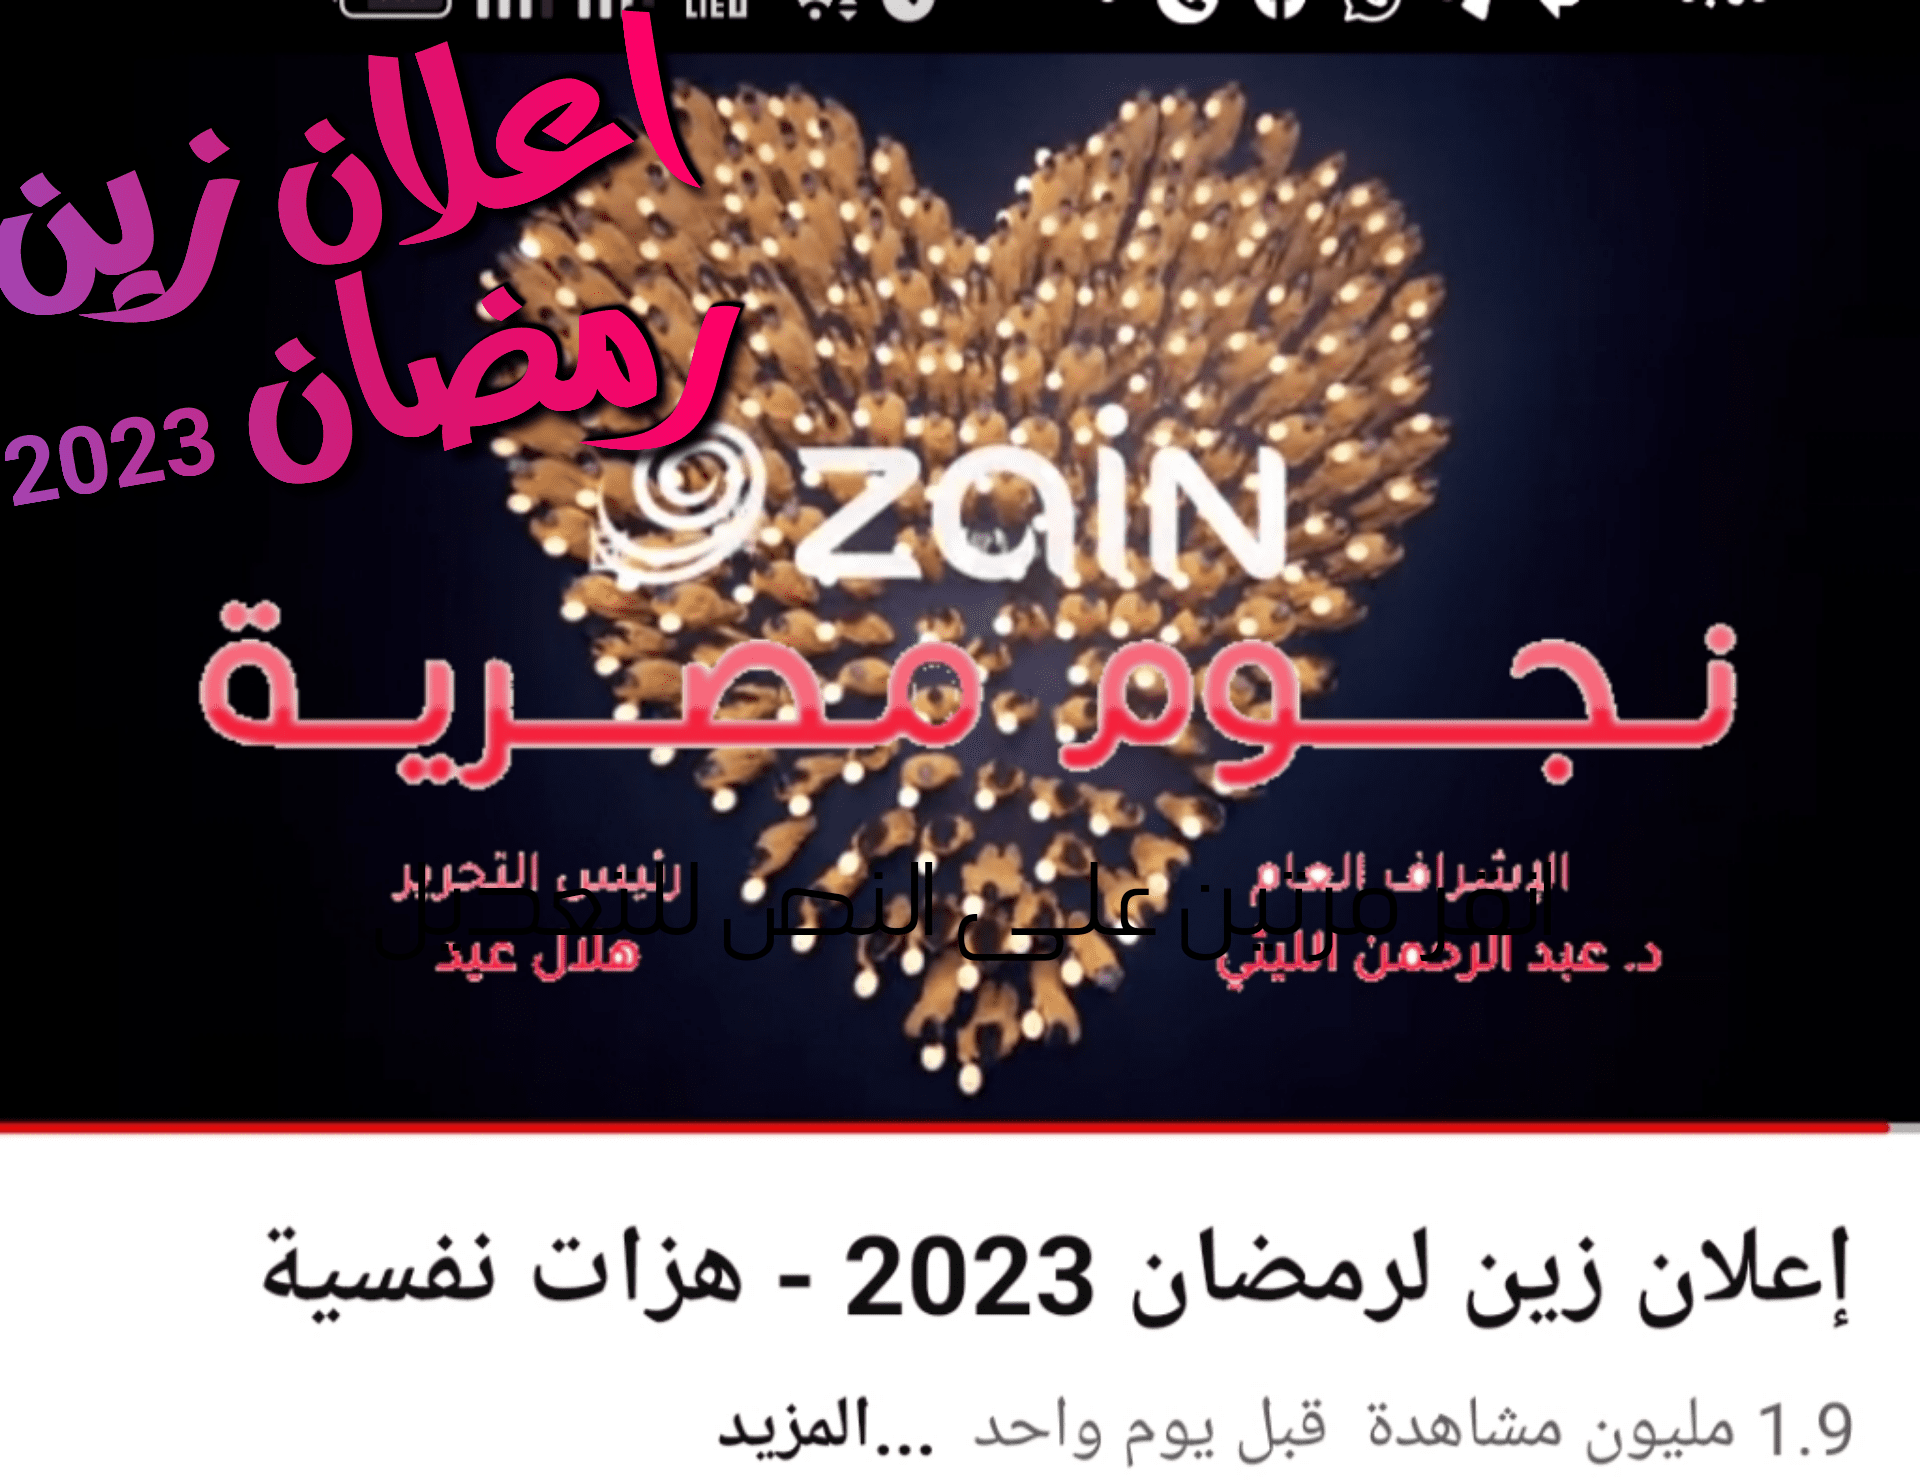 اعلان زين رمضان 2023